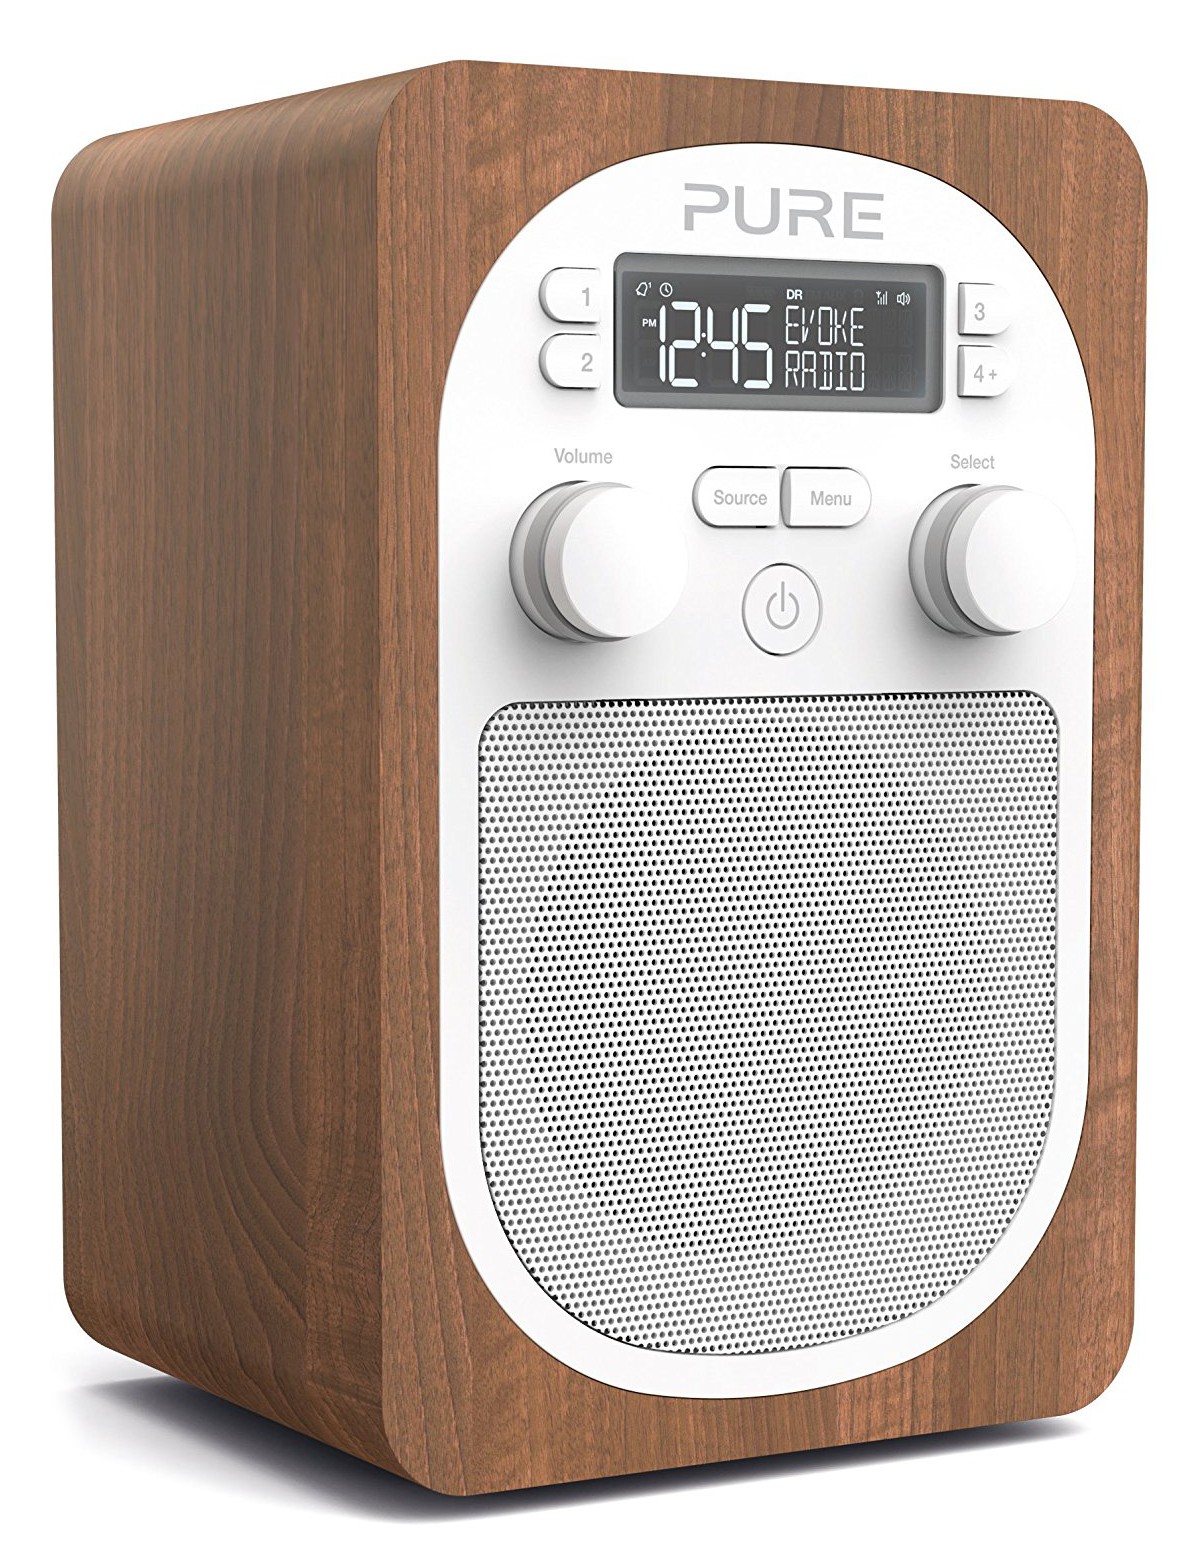 Pure - Evoke F3 - Nero - Radio Portatile DAB / DAB + Radio FM con Bluetooth  - Radio Digitale di Alta Qualità - Avvenice